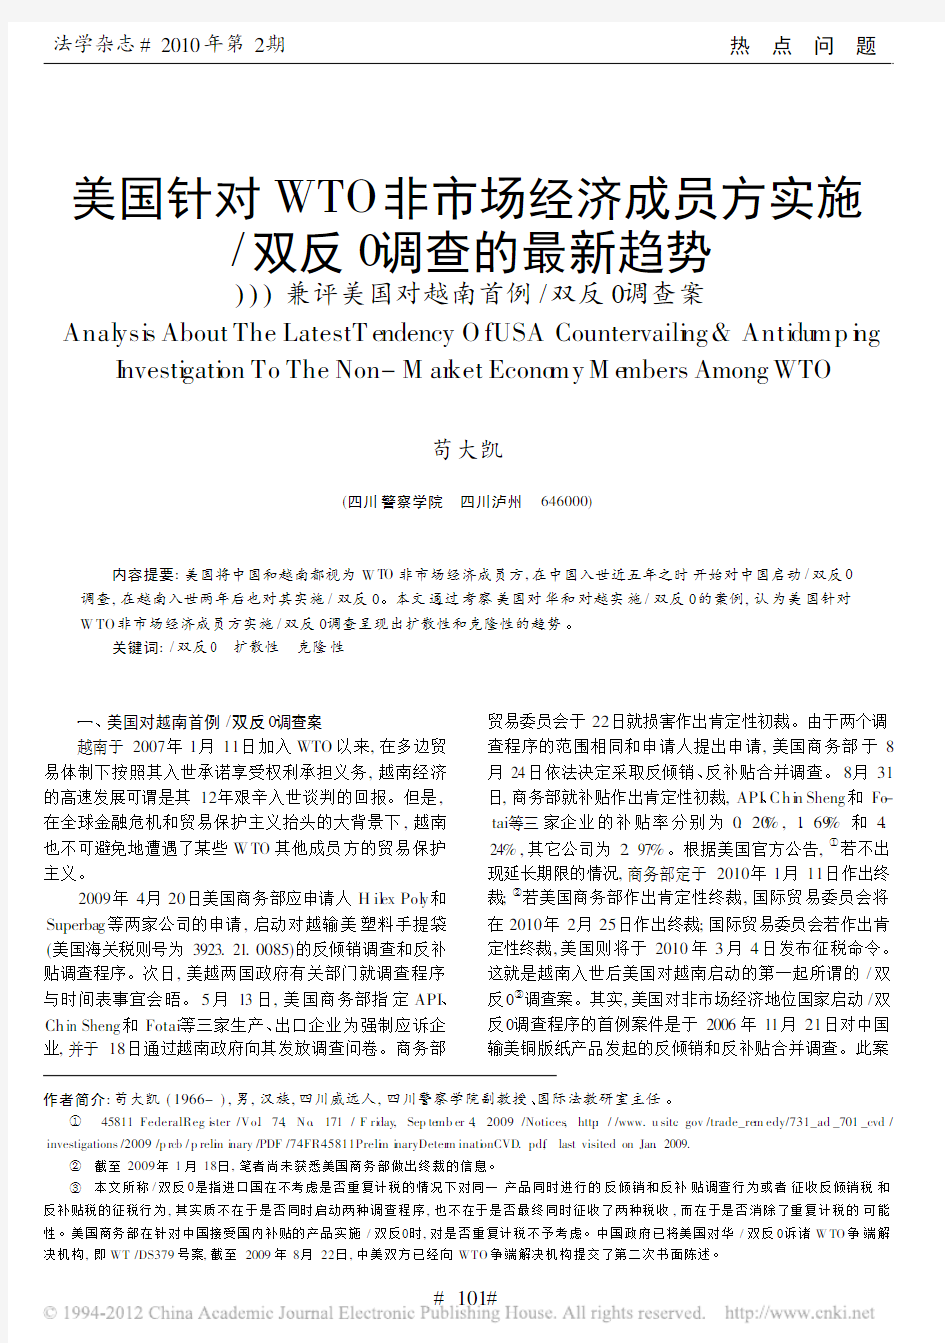 美国针对WTO非市场经济成员方实施_双反__省略_最新趋势_兼评美国对越南首例_